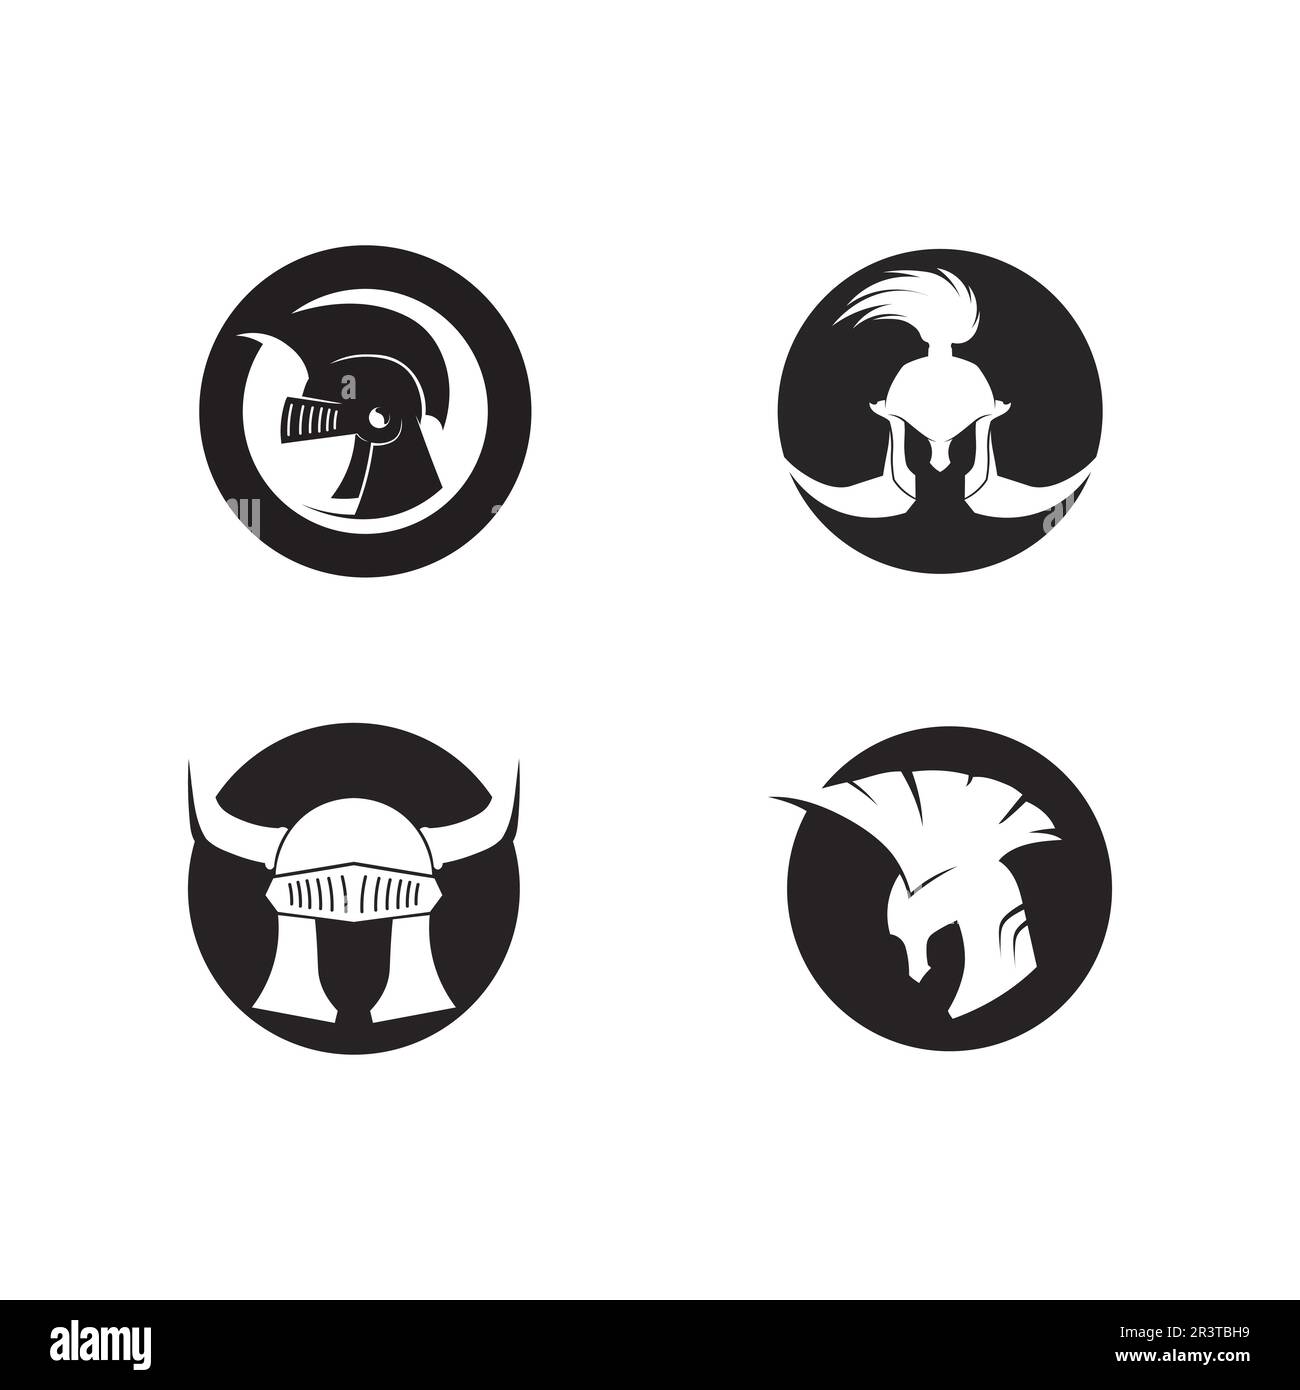 le logo spartan et gladiator icon crée un vecteur Illustration de Vecteur